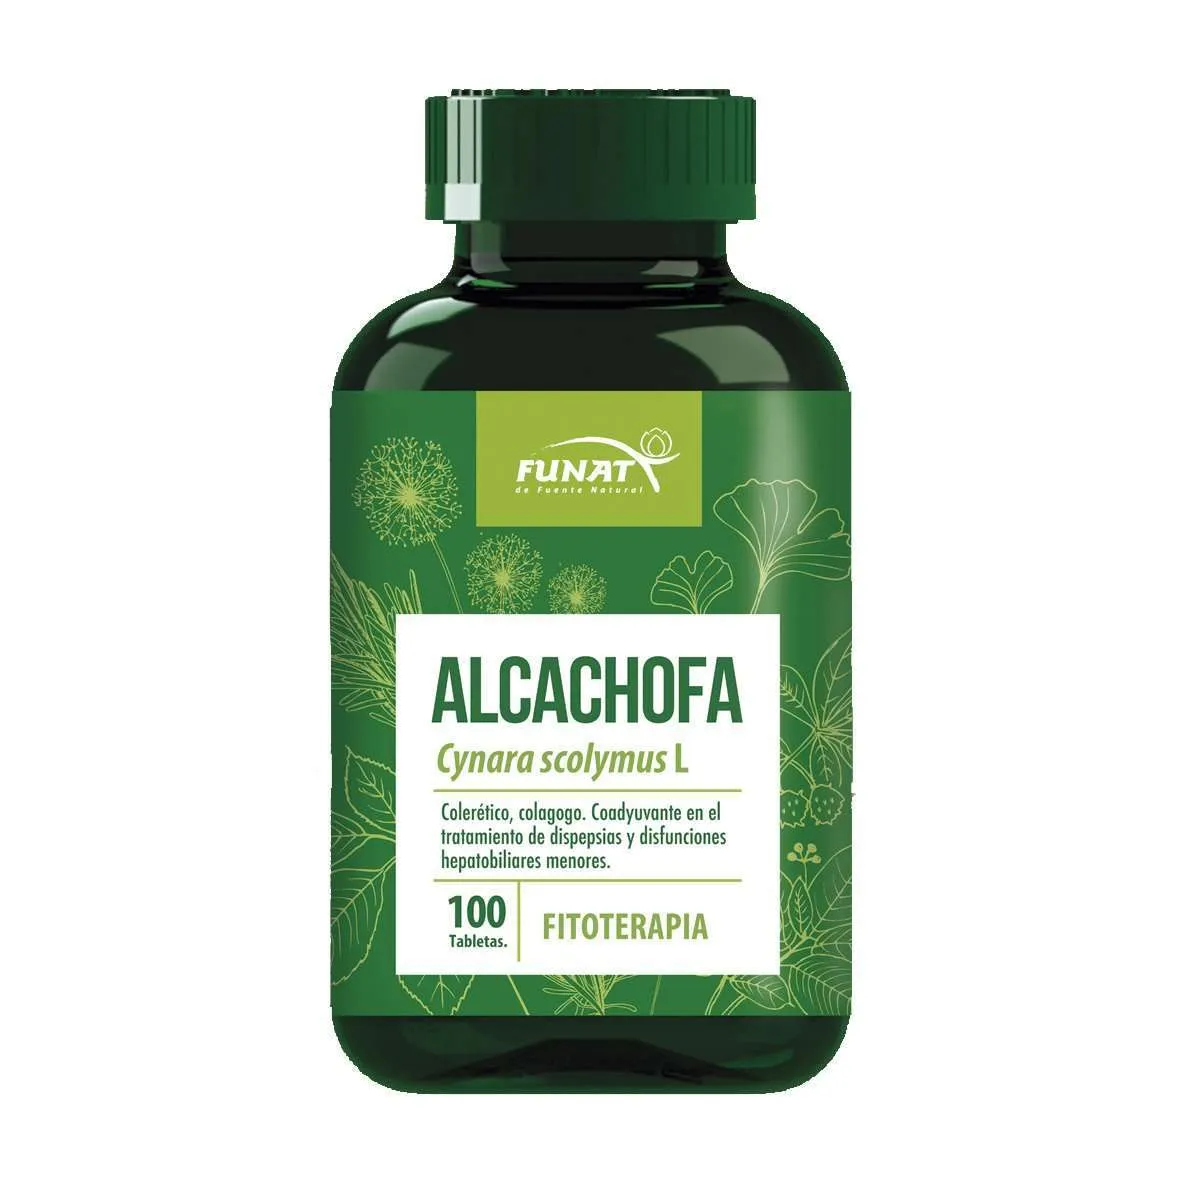 Alcachofa 100 tabletas - Frente del empaque - Funat